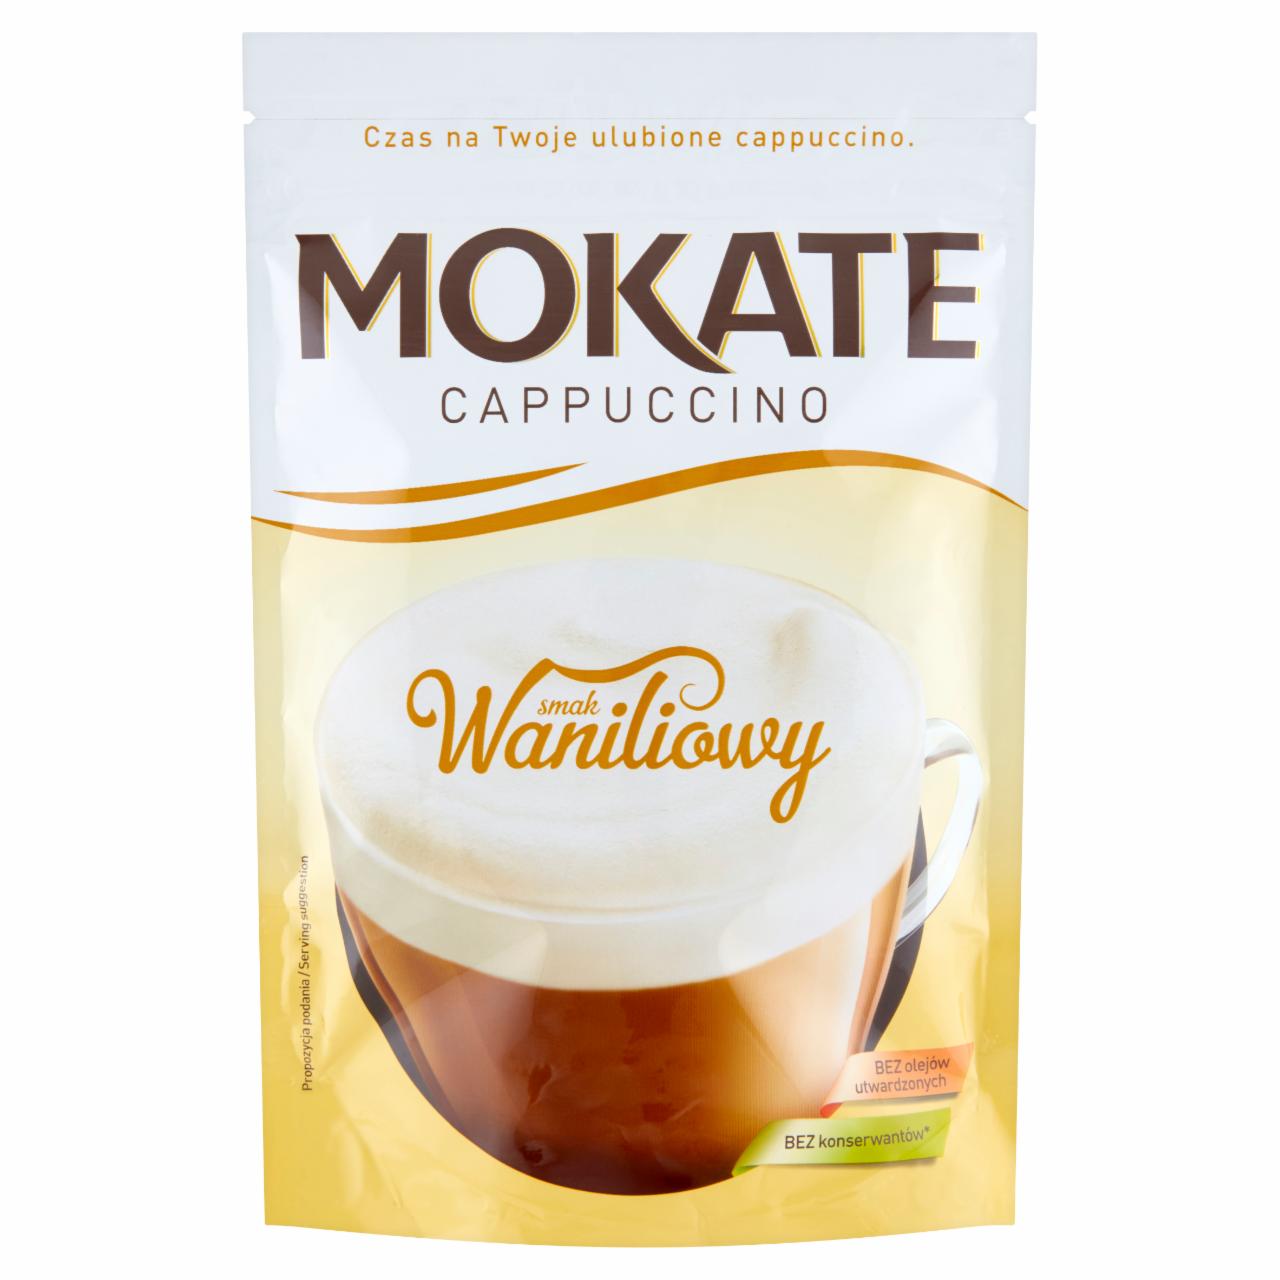 Zdjęcia - Mokate Cappuccino smak waniliowy 110 g